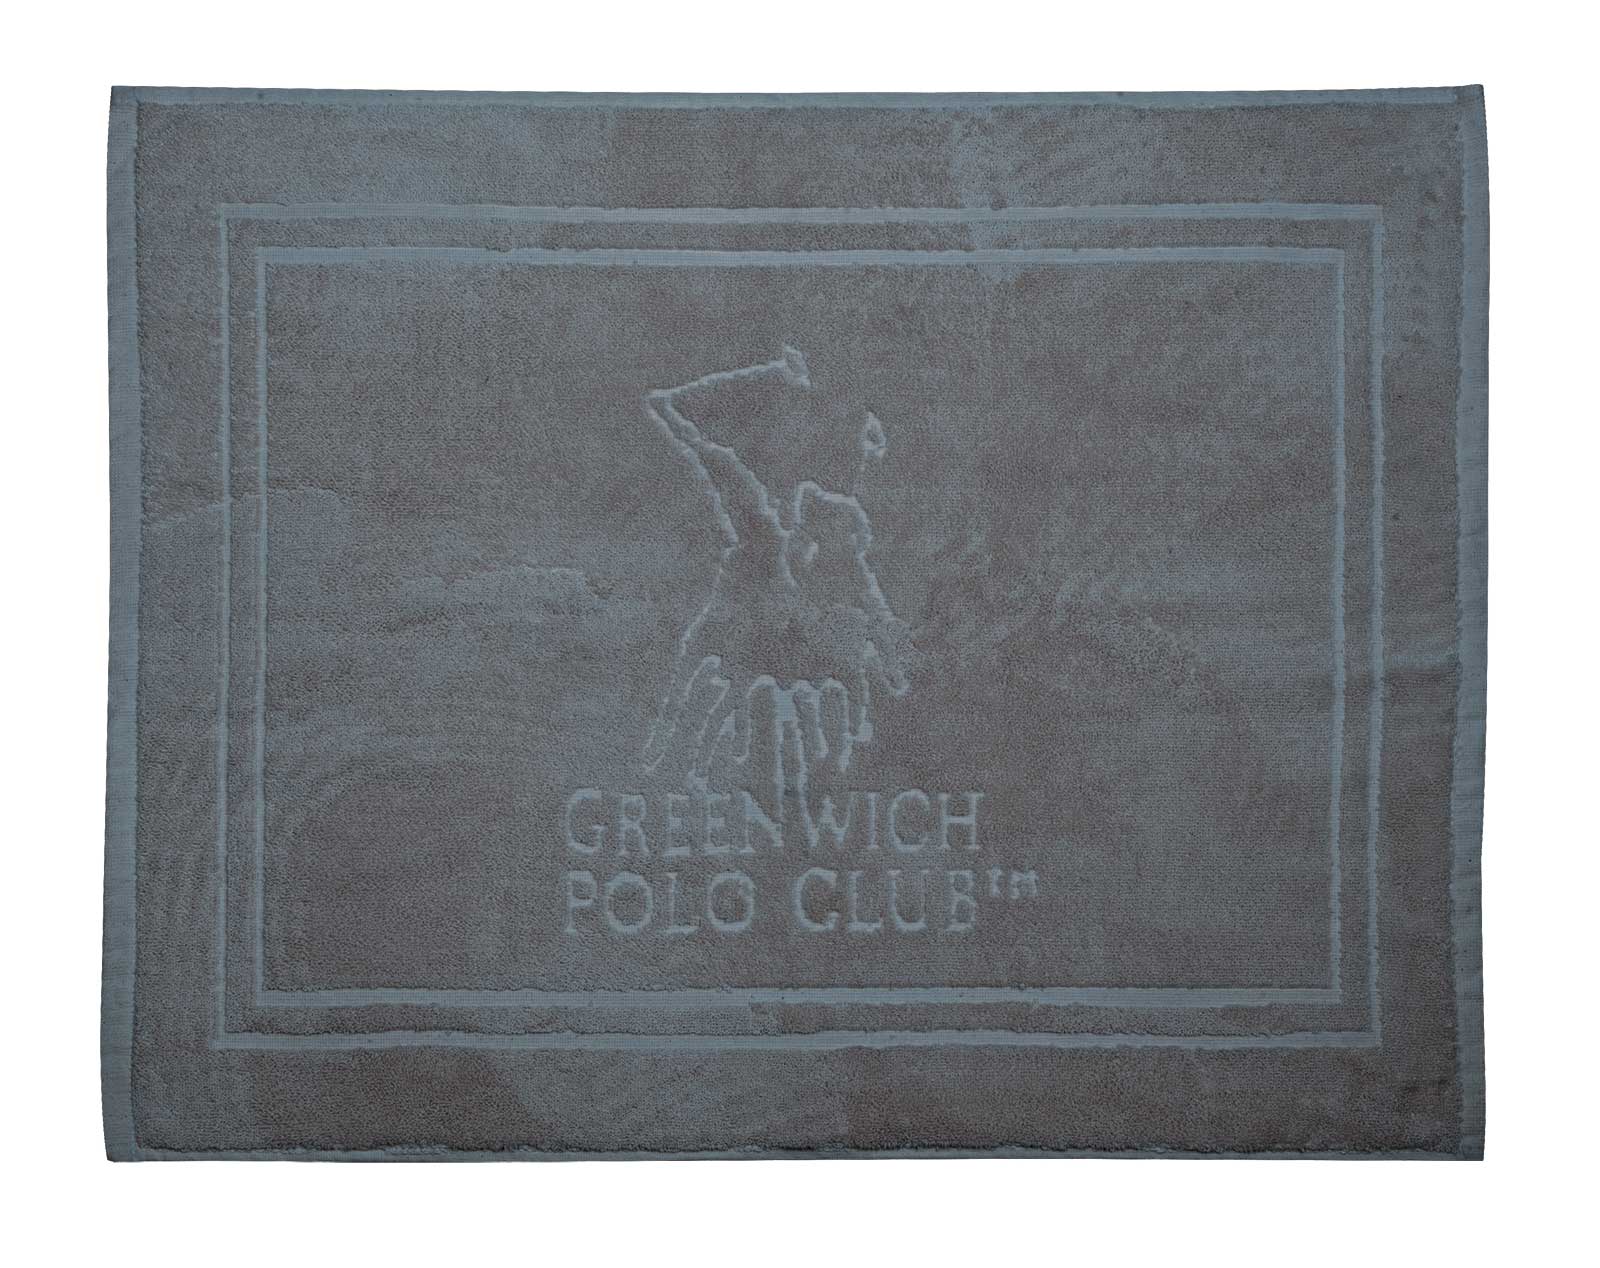 Greenwich Polo Club Ταπετο 50Χ70 3041 Γκρι Γκρι